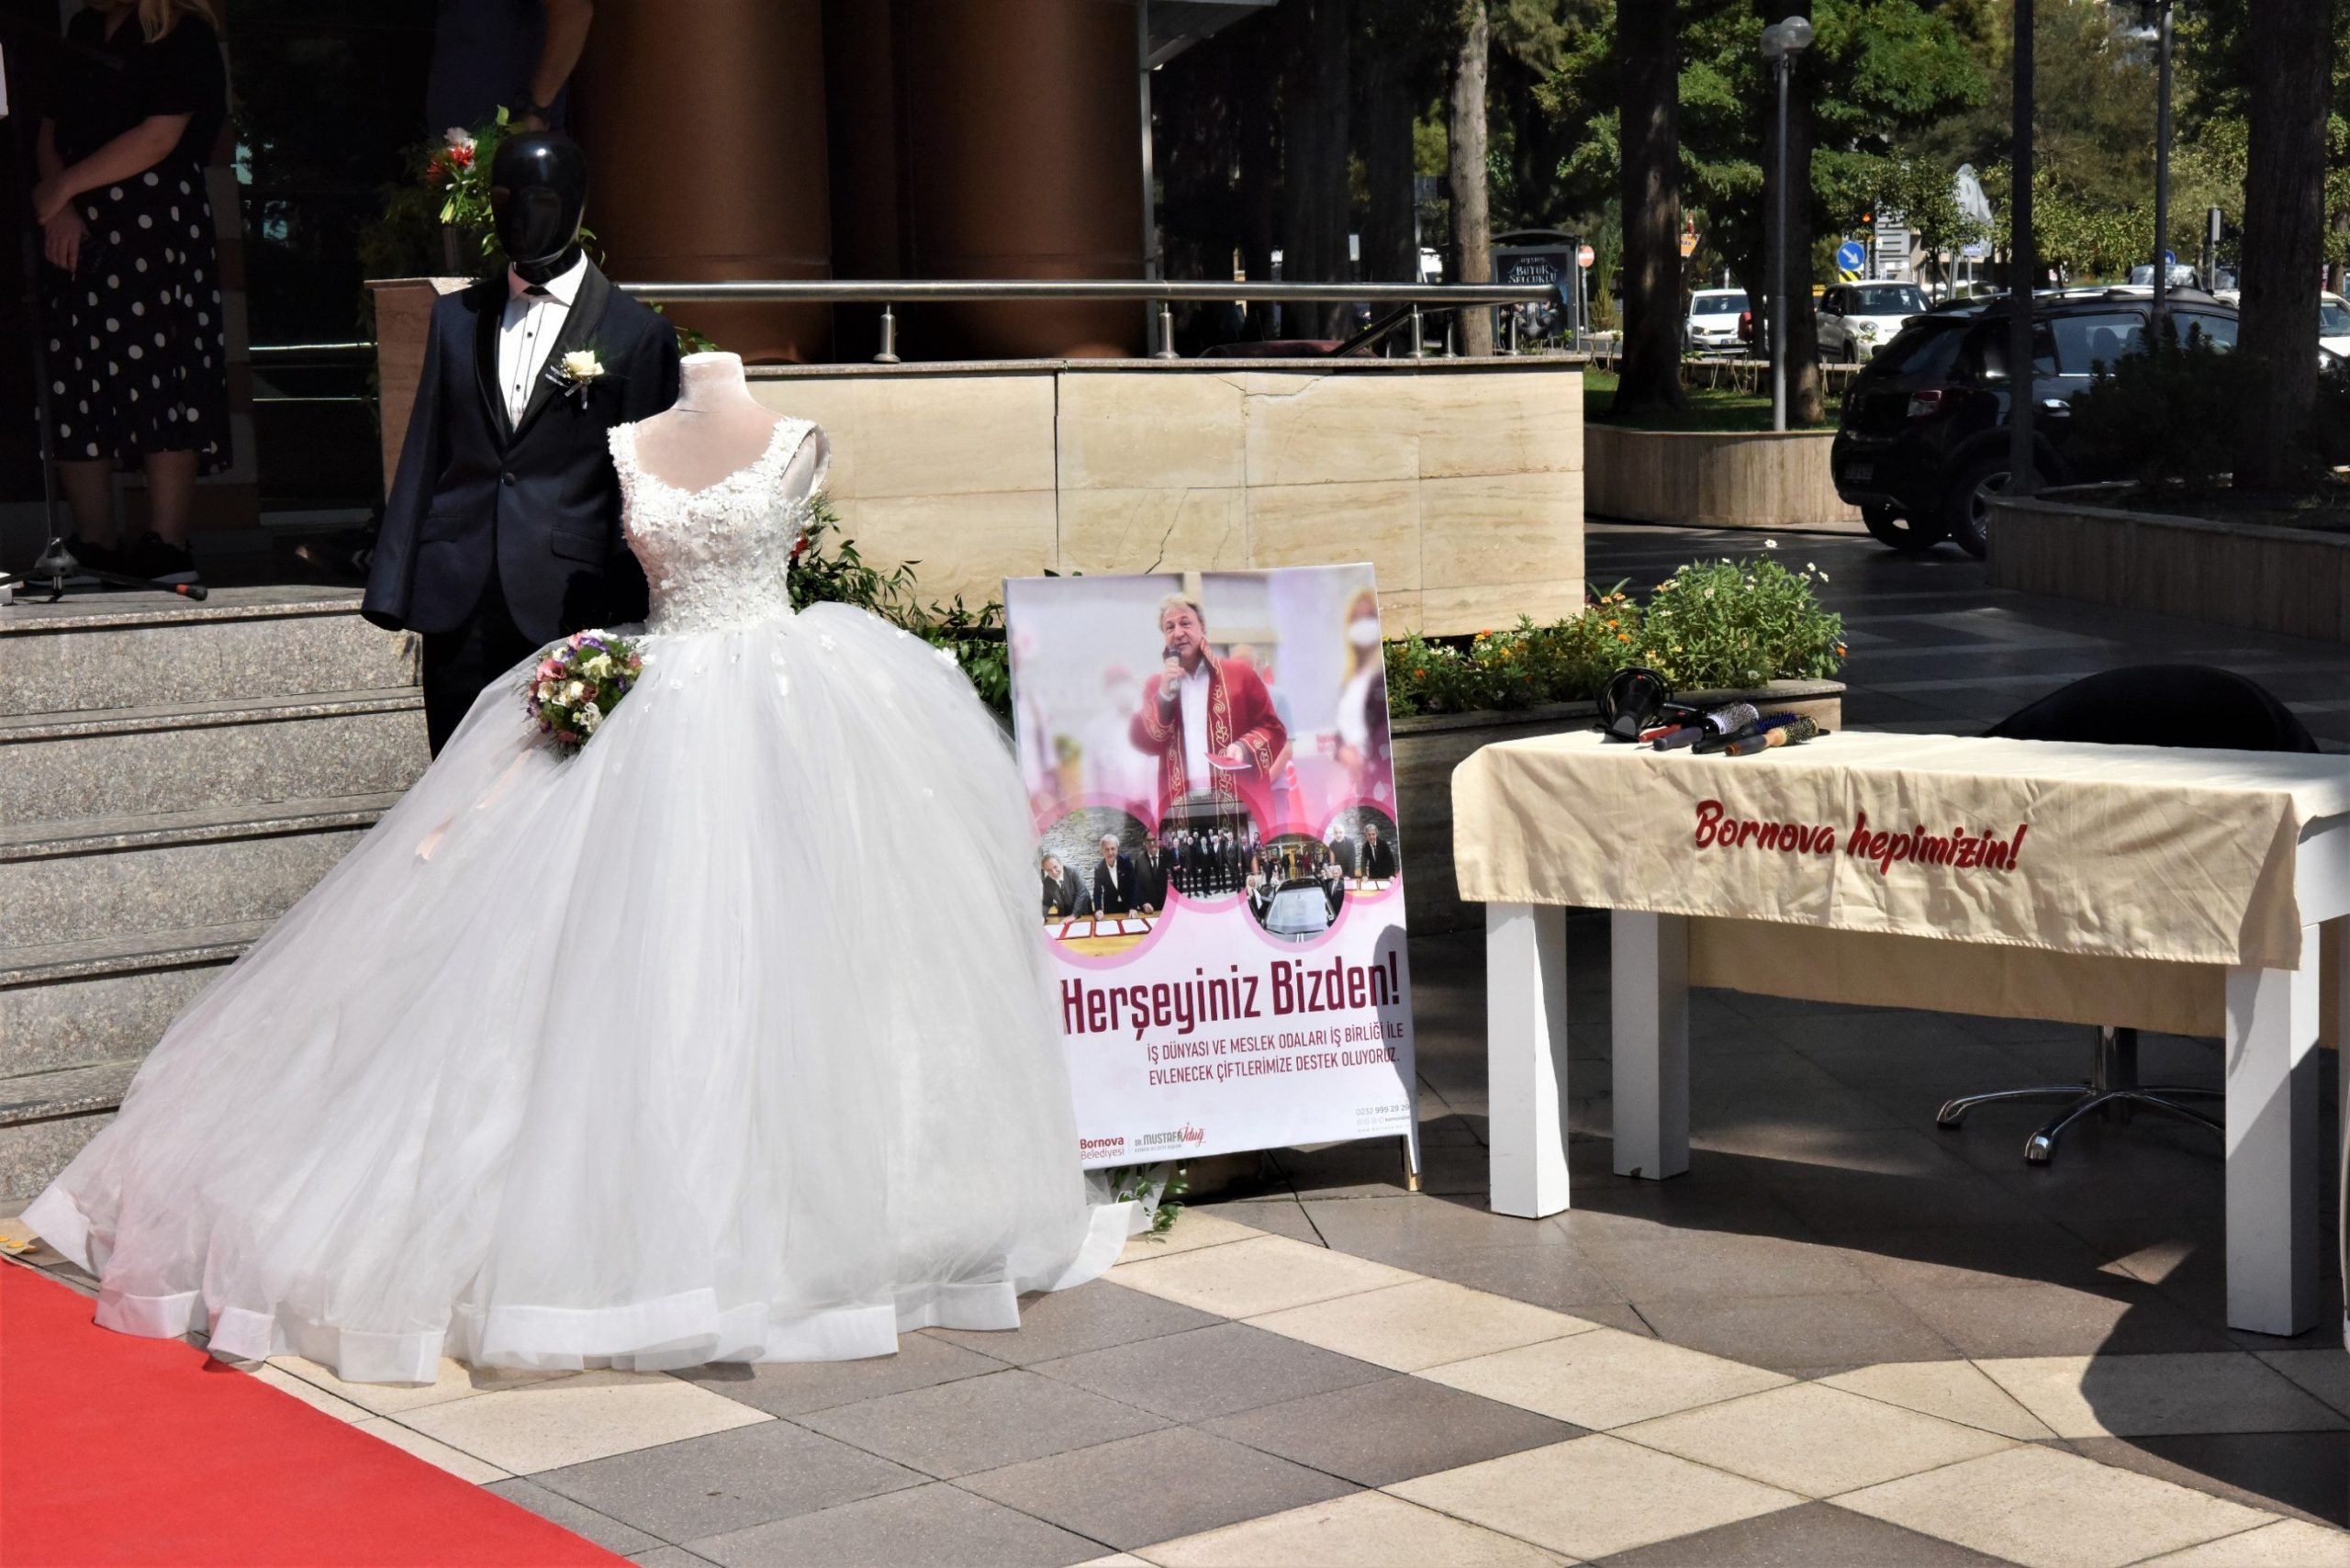 Bornova Belediyesi’nden   evlenmek isteyen gençlere destek